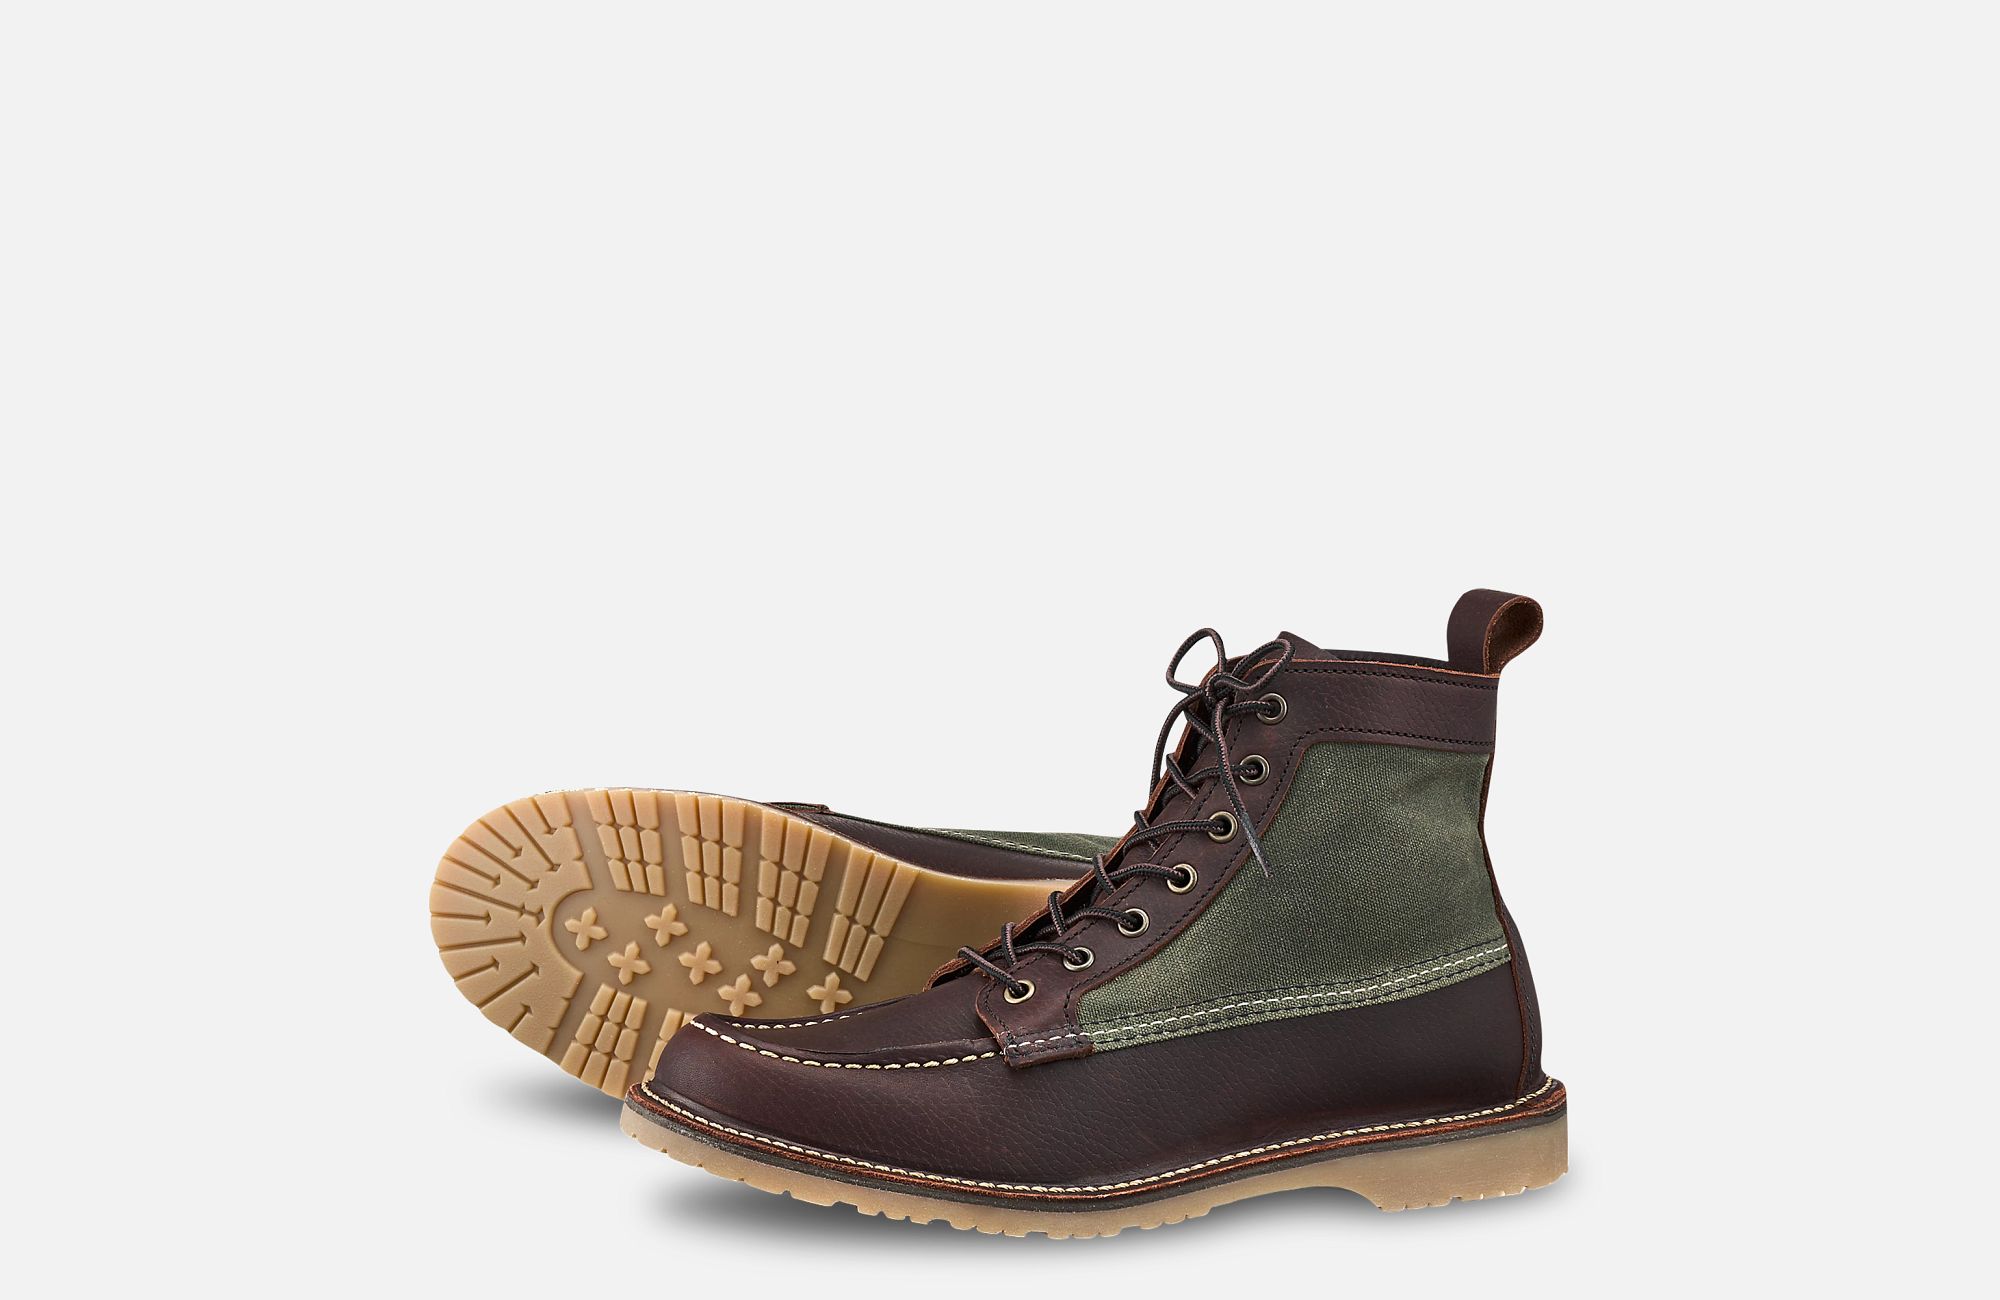 Men's Weekender Boot in Dark Brown Leather 3336